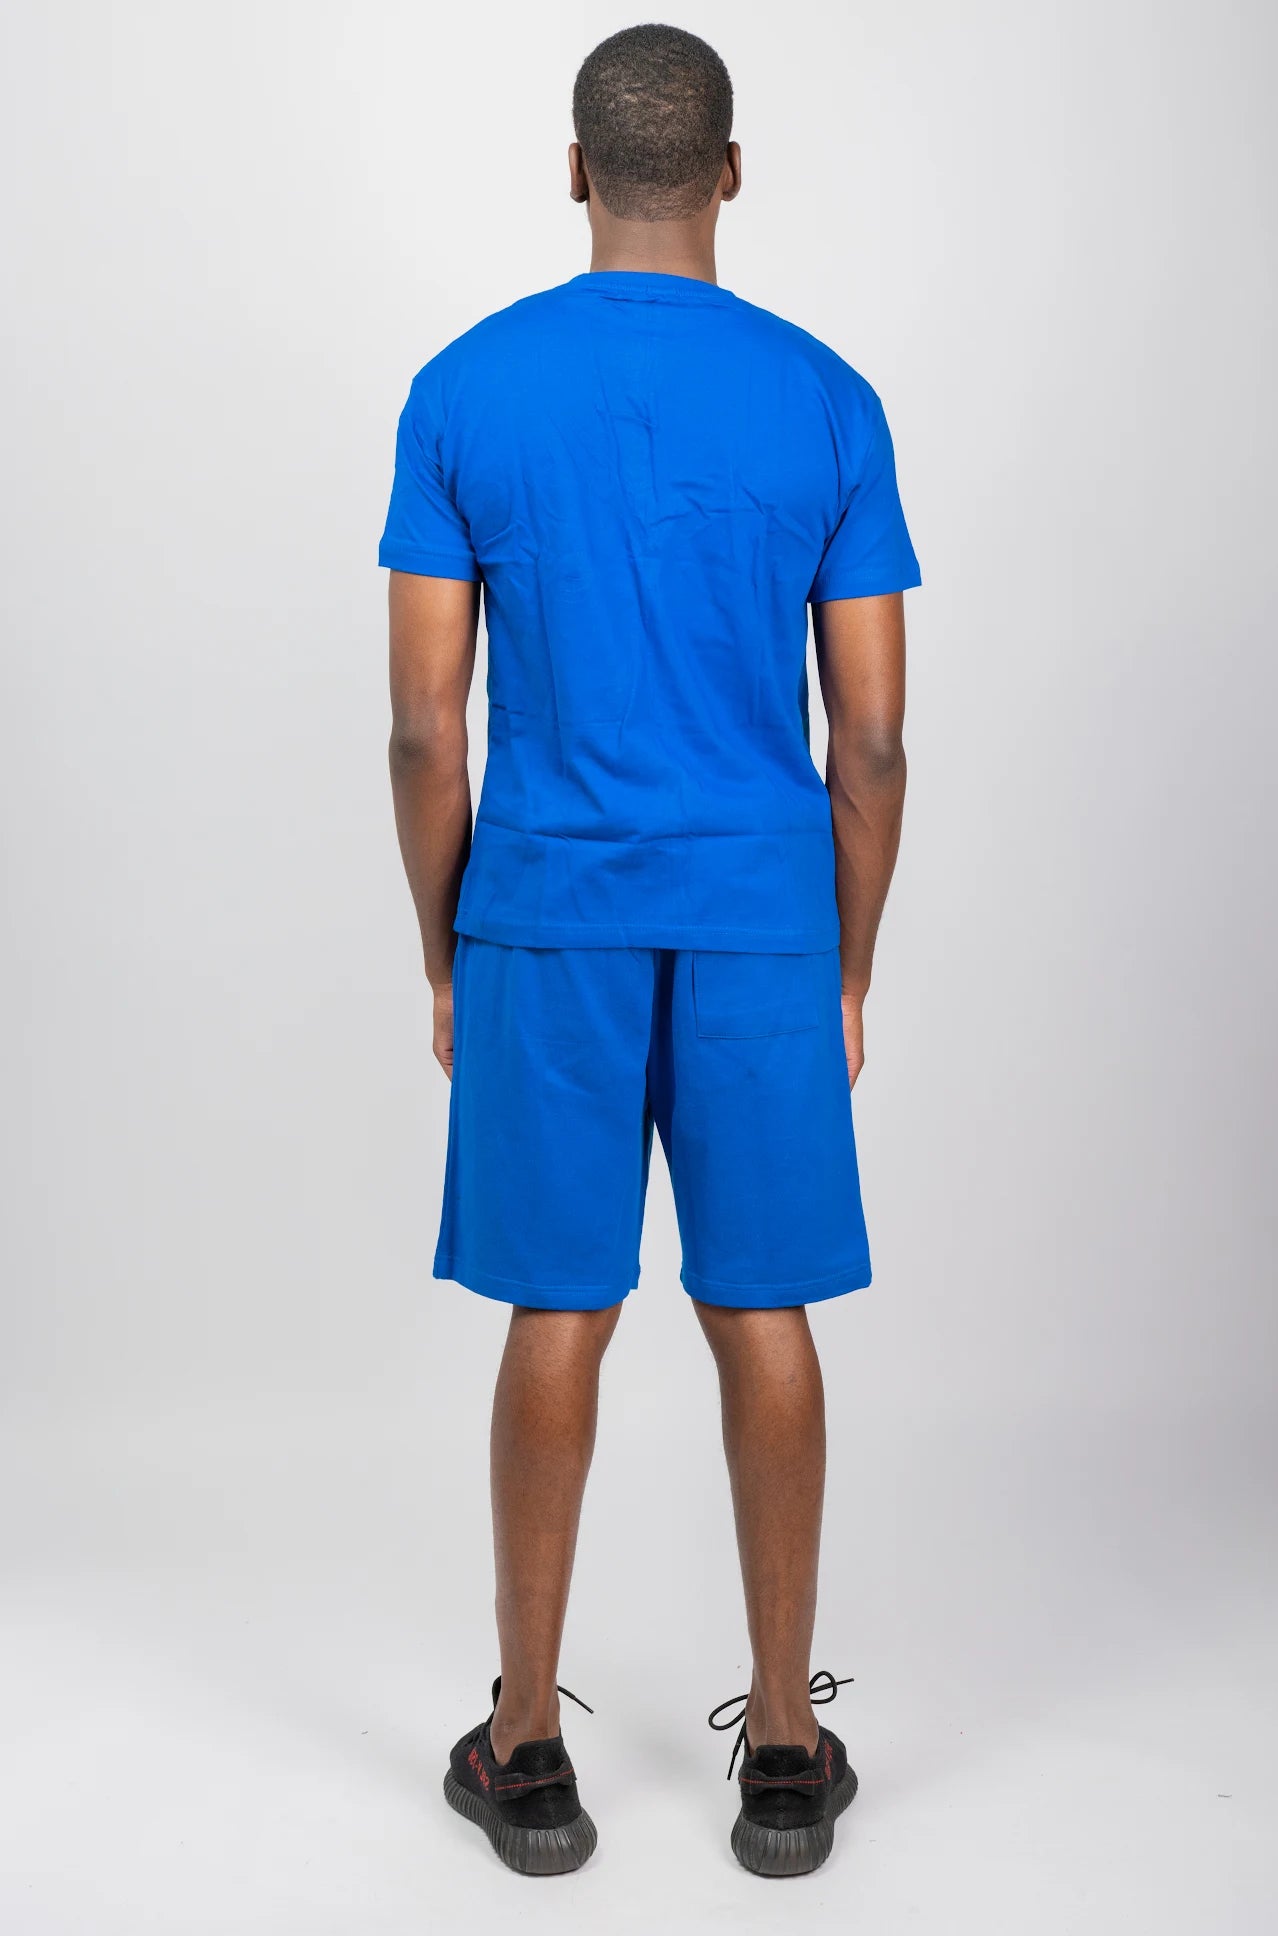 Royal blue t-shirt and short sets